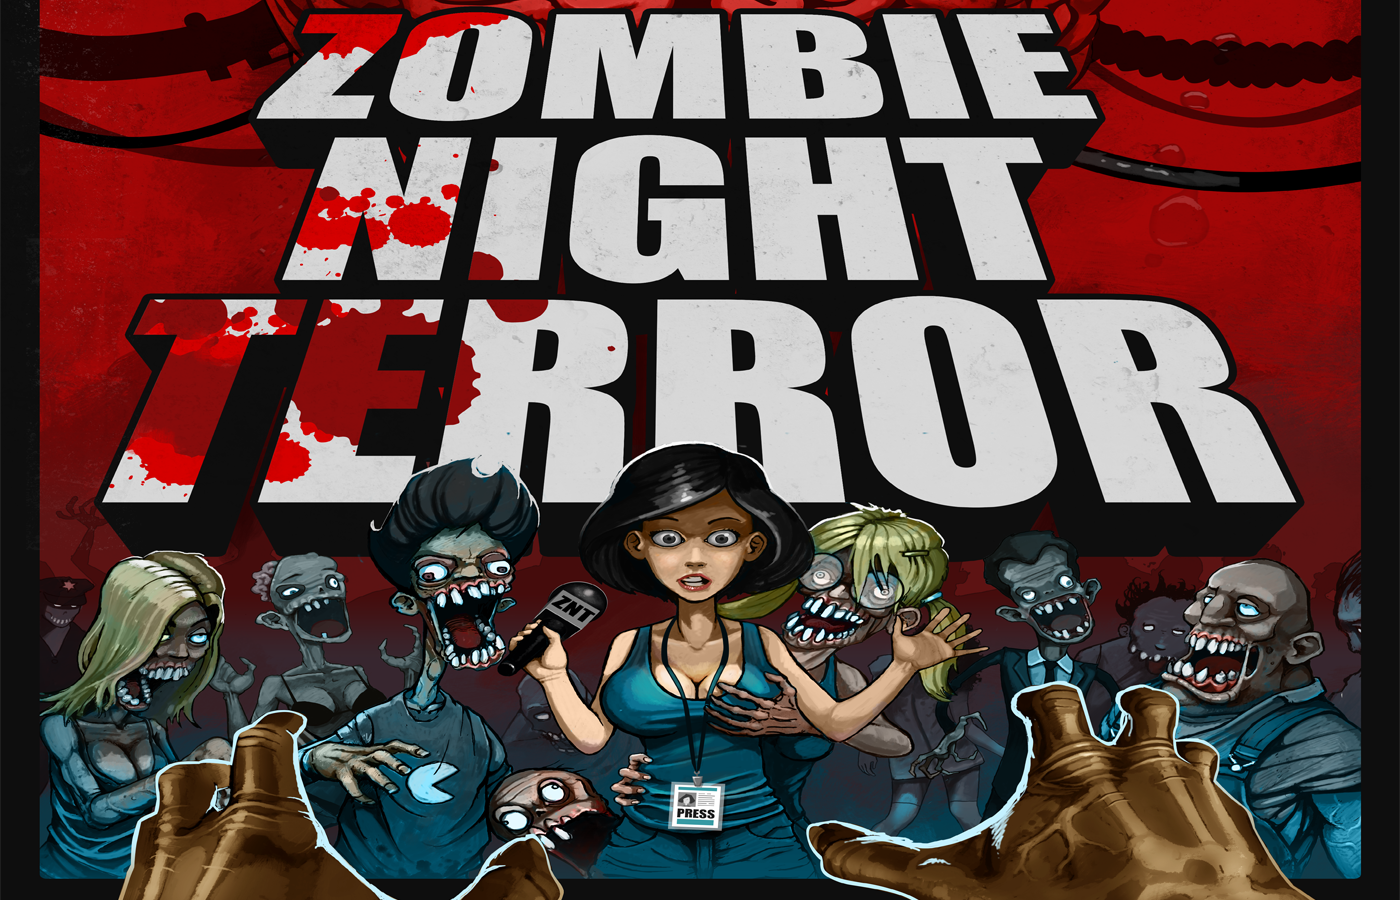 download zombie night terror